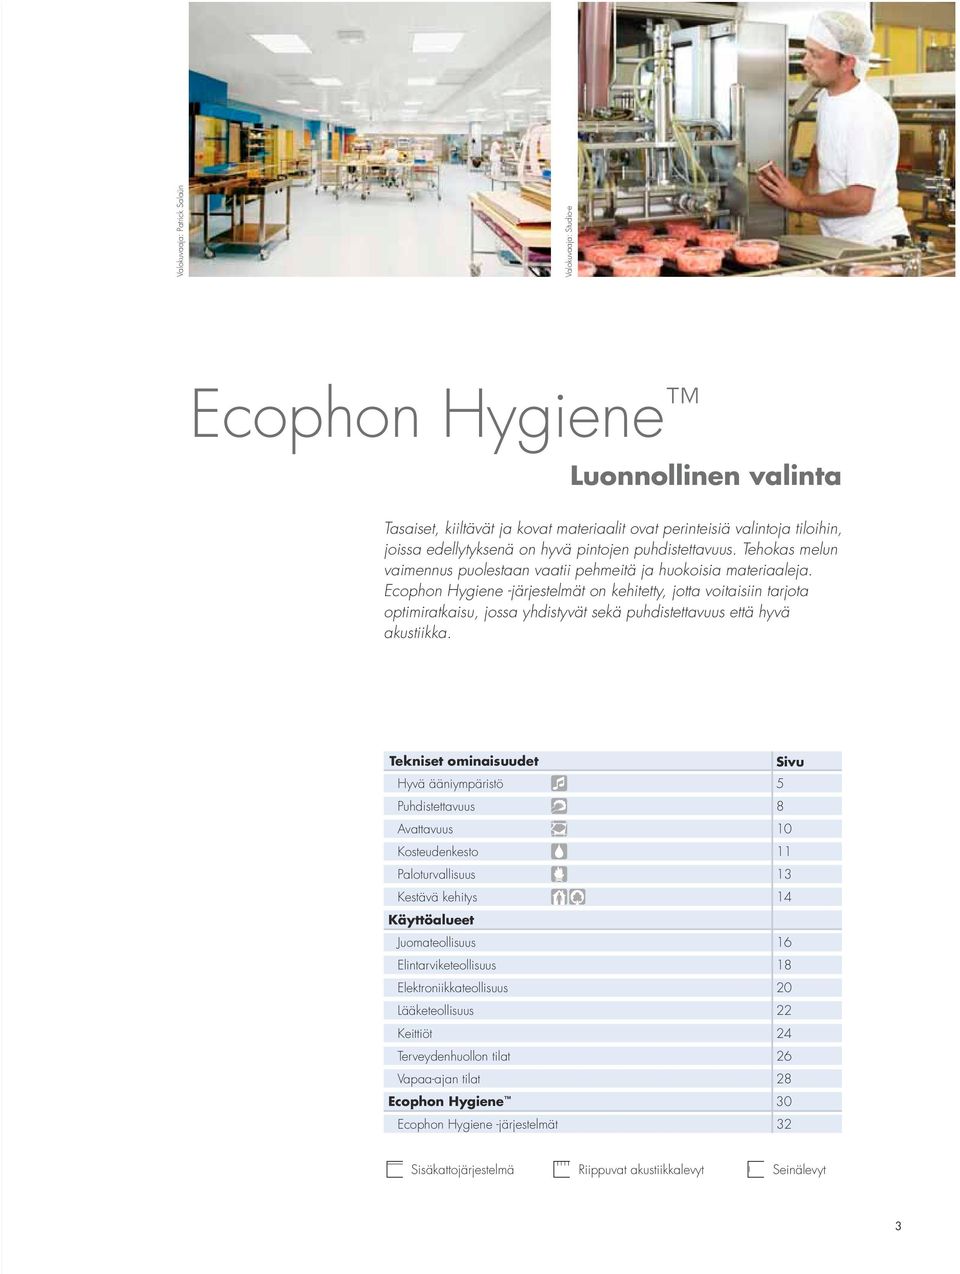 Ecophon Hygiene -järjestelmät on kehitetty, jotta voitaisiin tarjota optimiratkaisu, jossa yhdistyvät sekä puhdistettavuus että hyvä akustiikka.